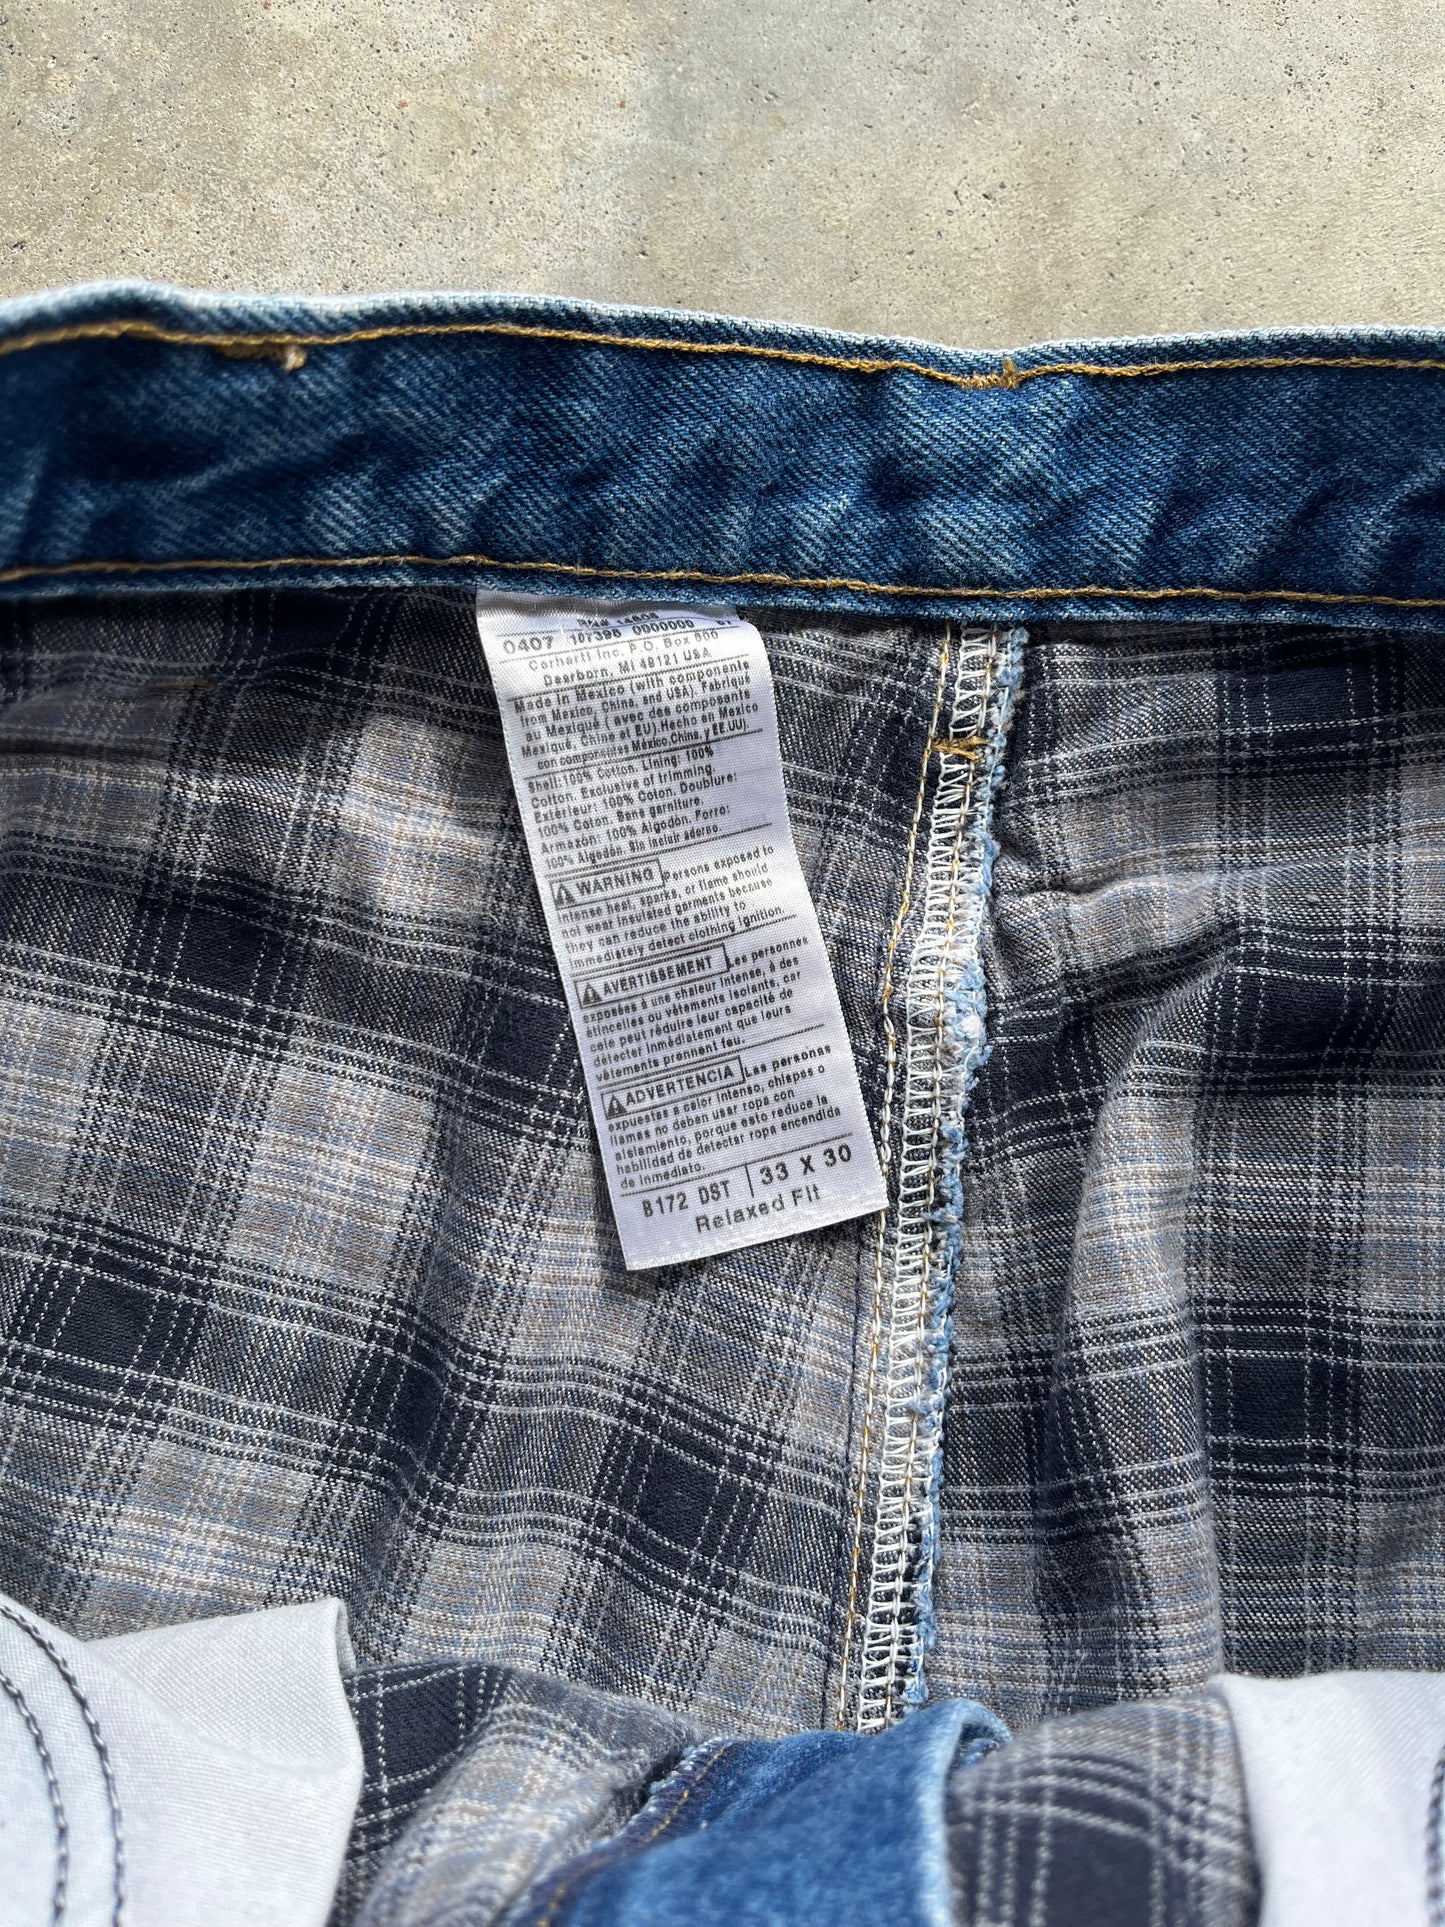 (33 x 30) Denim Plaid-Lined Carhartt Jeans